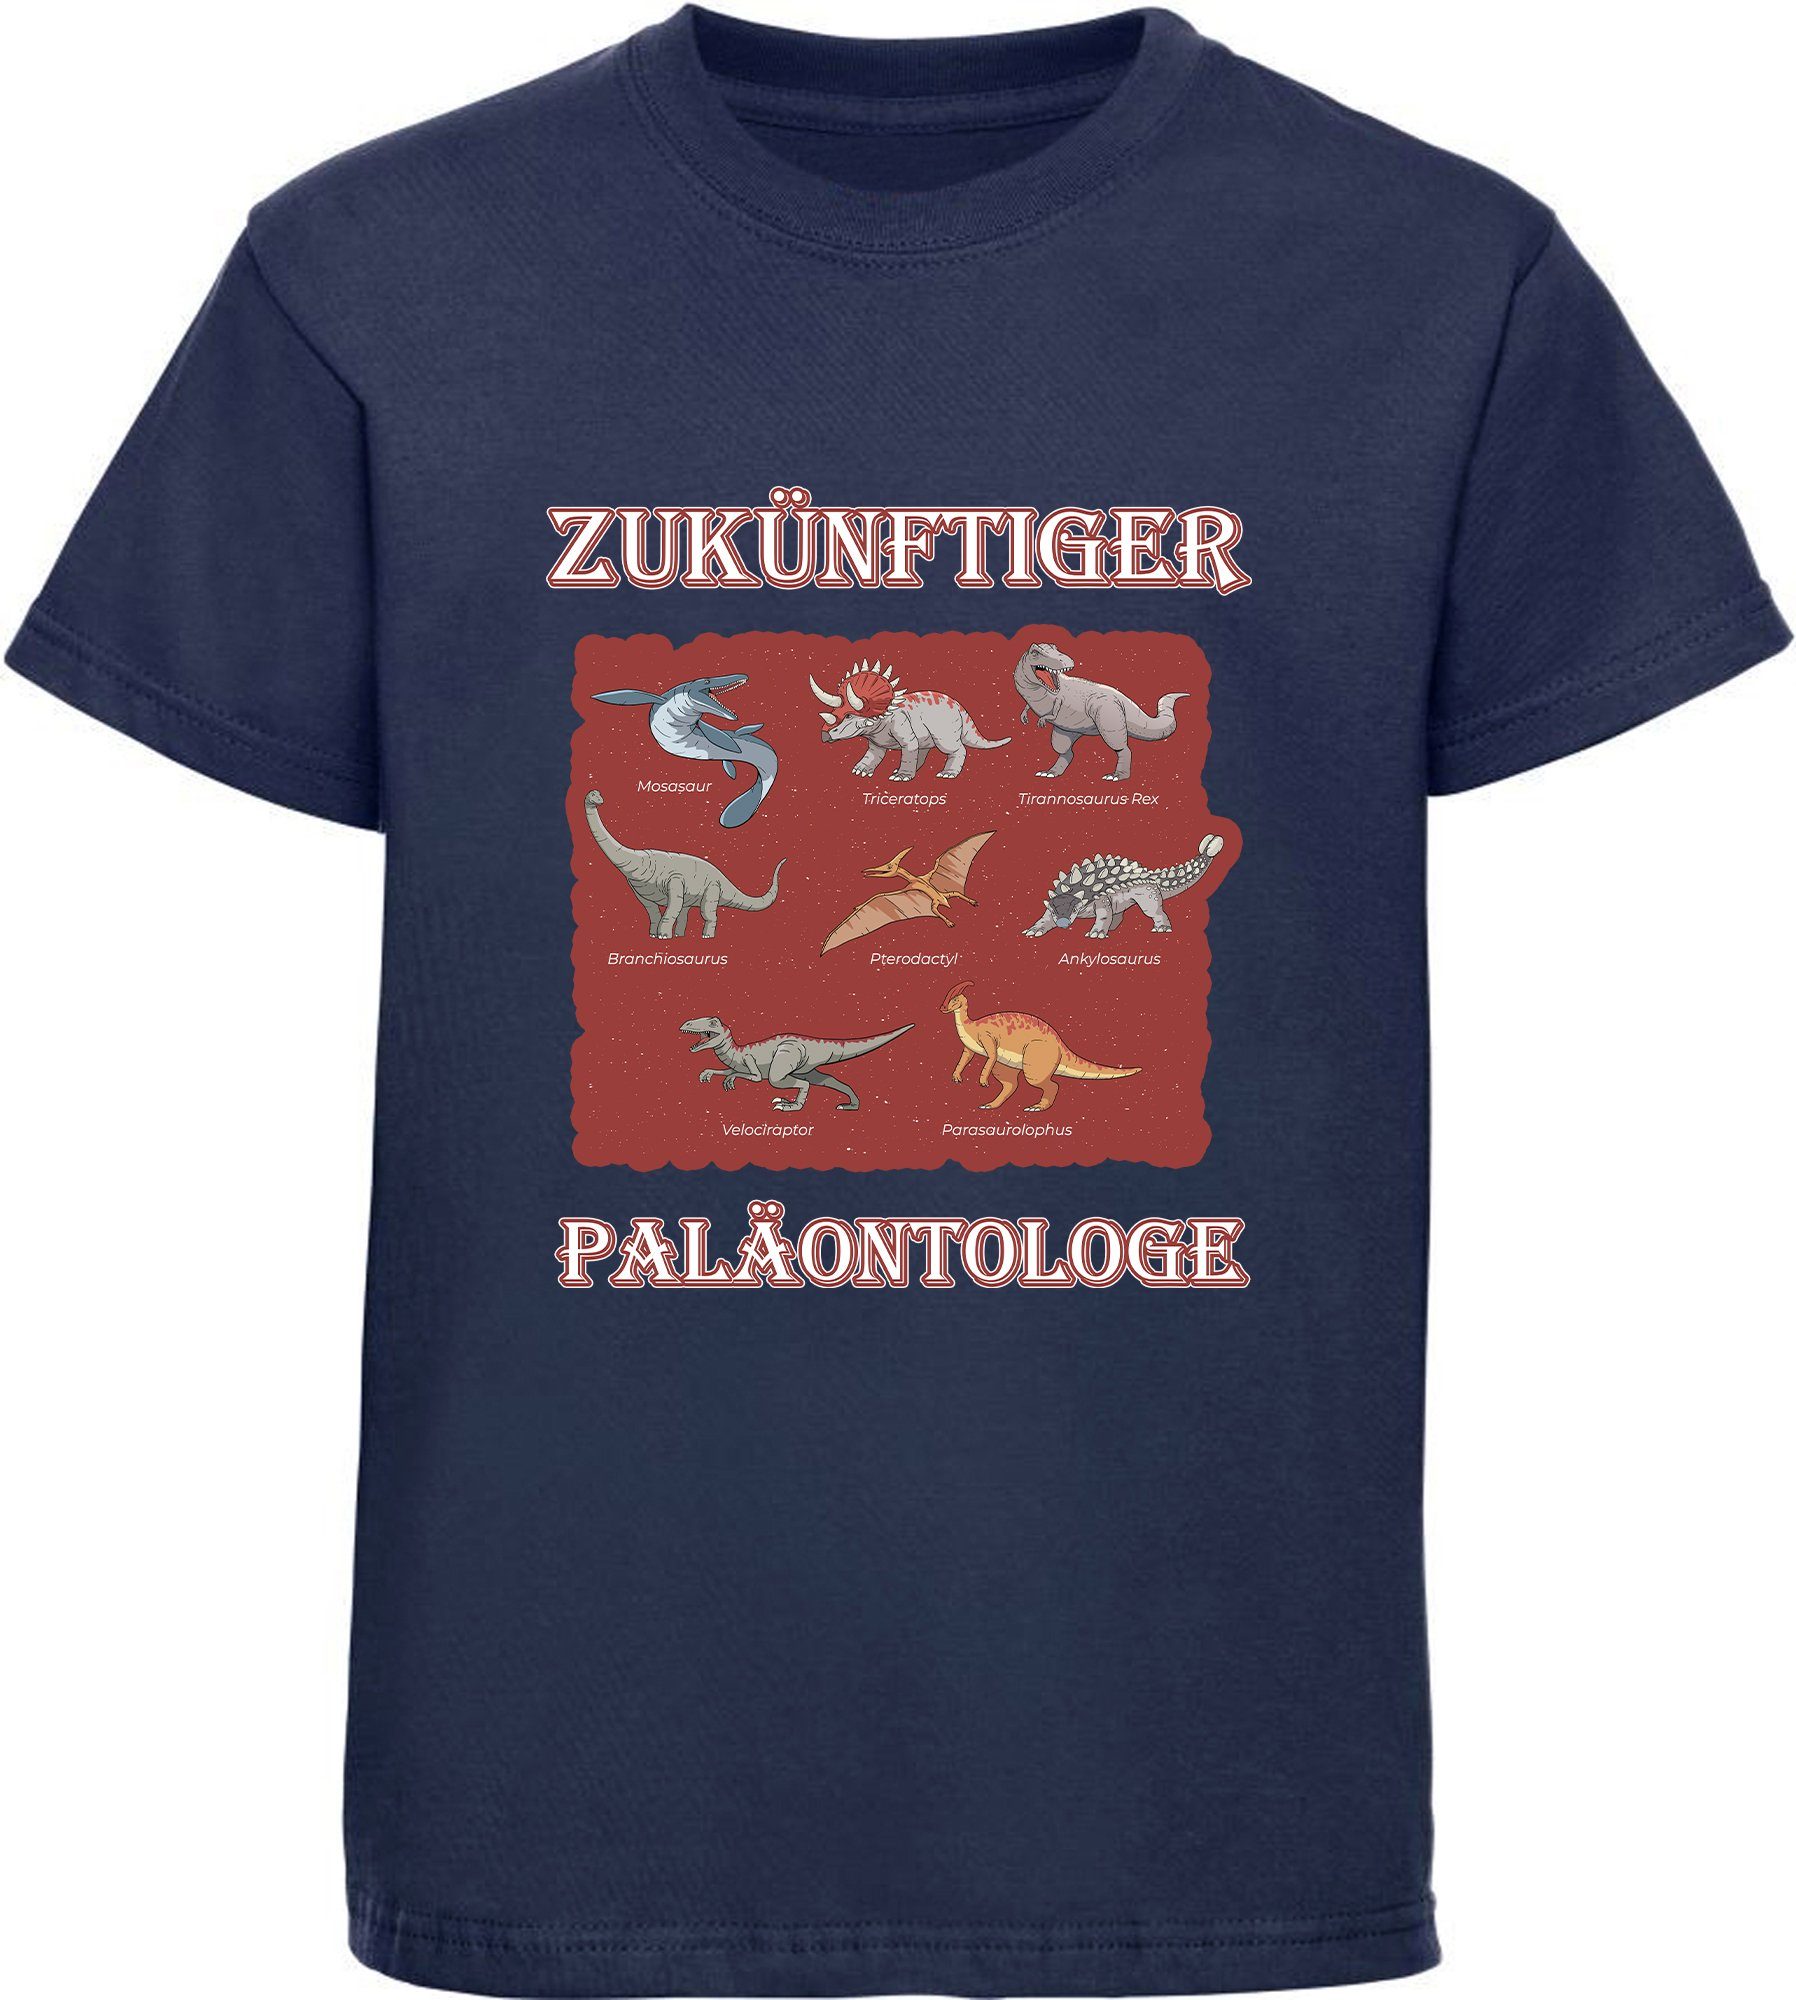 Paläontologe Kinder bedrucktes mit Dinosauriern 100% mit blau vielen Aufdruck, T-Shirt i50 Dino MyDesign24 navy T-Shirt Baumwolle